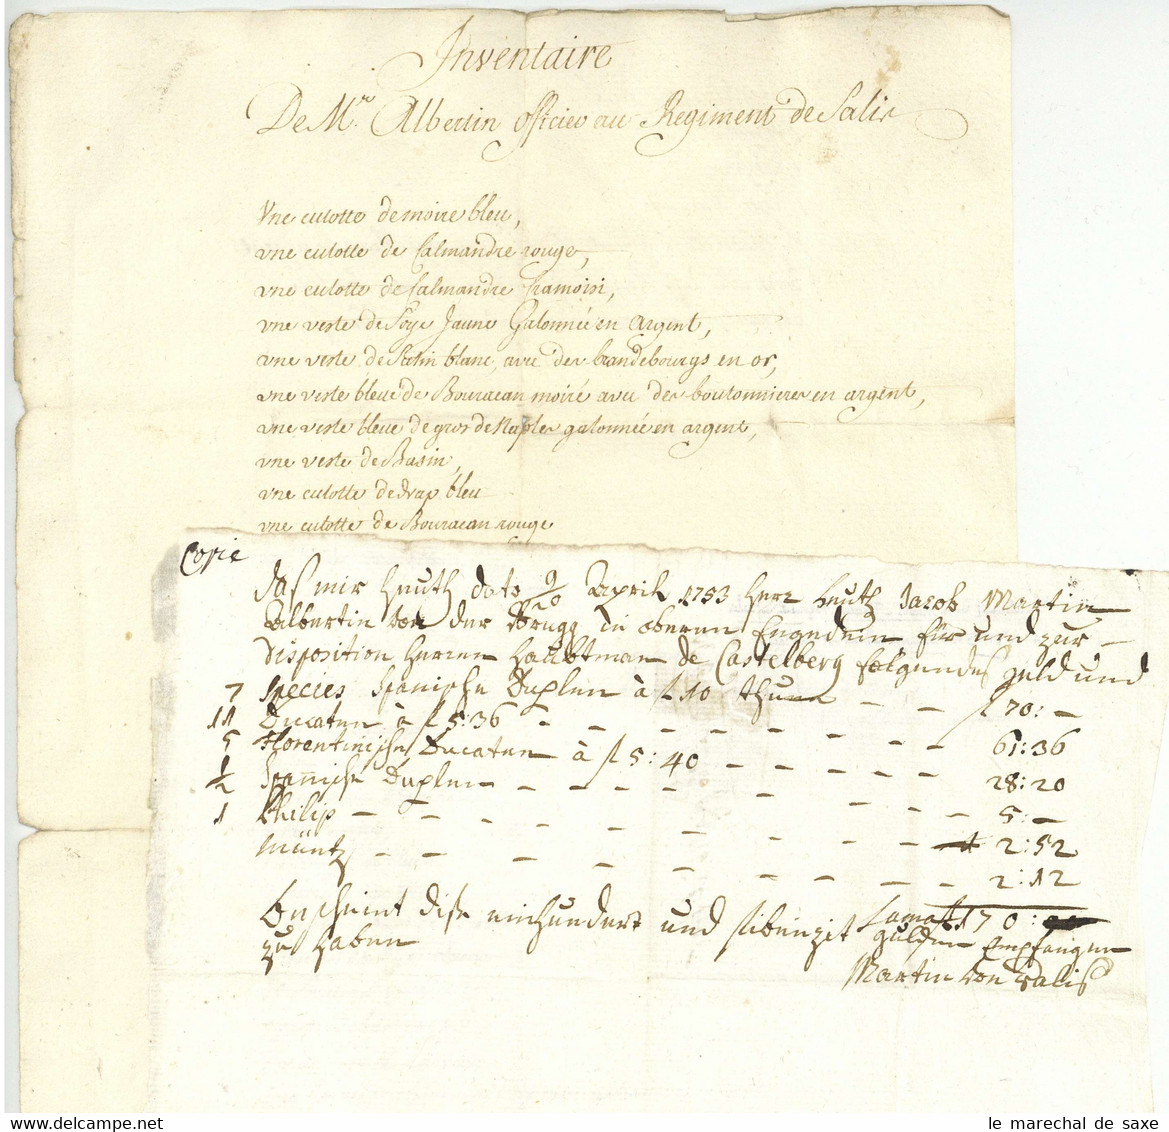 Graubünden Fremde Dienste Regiment Von Salis Albertini Duell 1753 Inventaire Officier Saluz - Documents Historiques